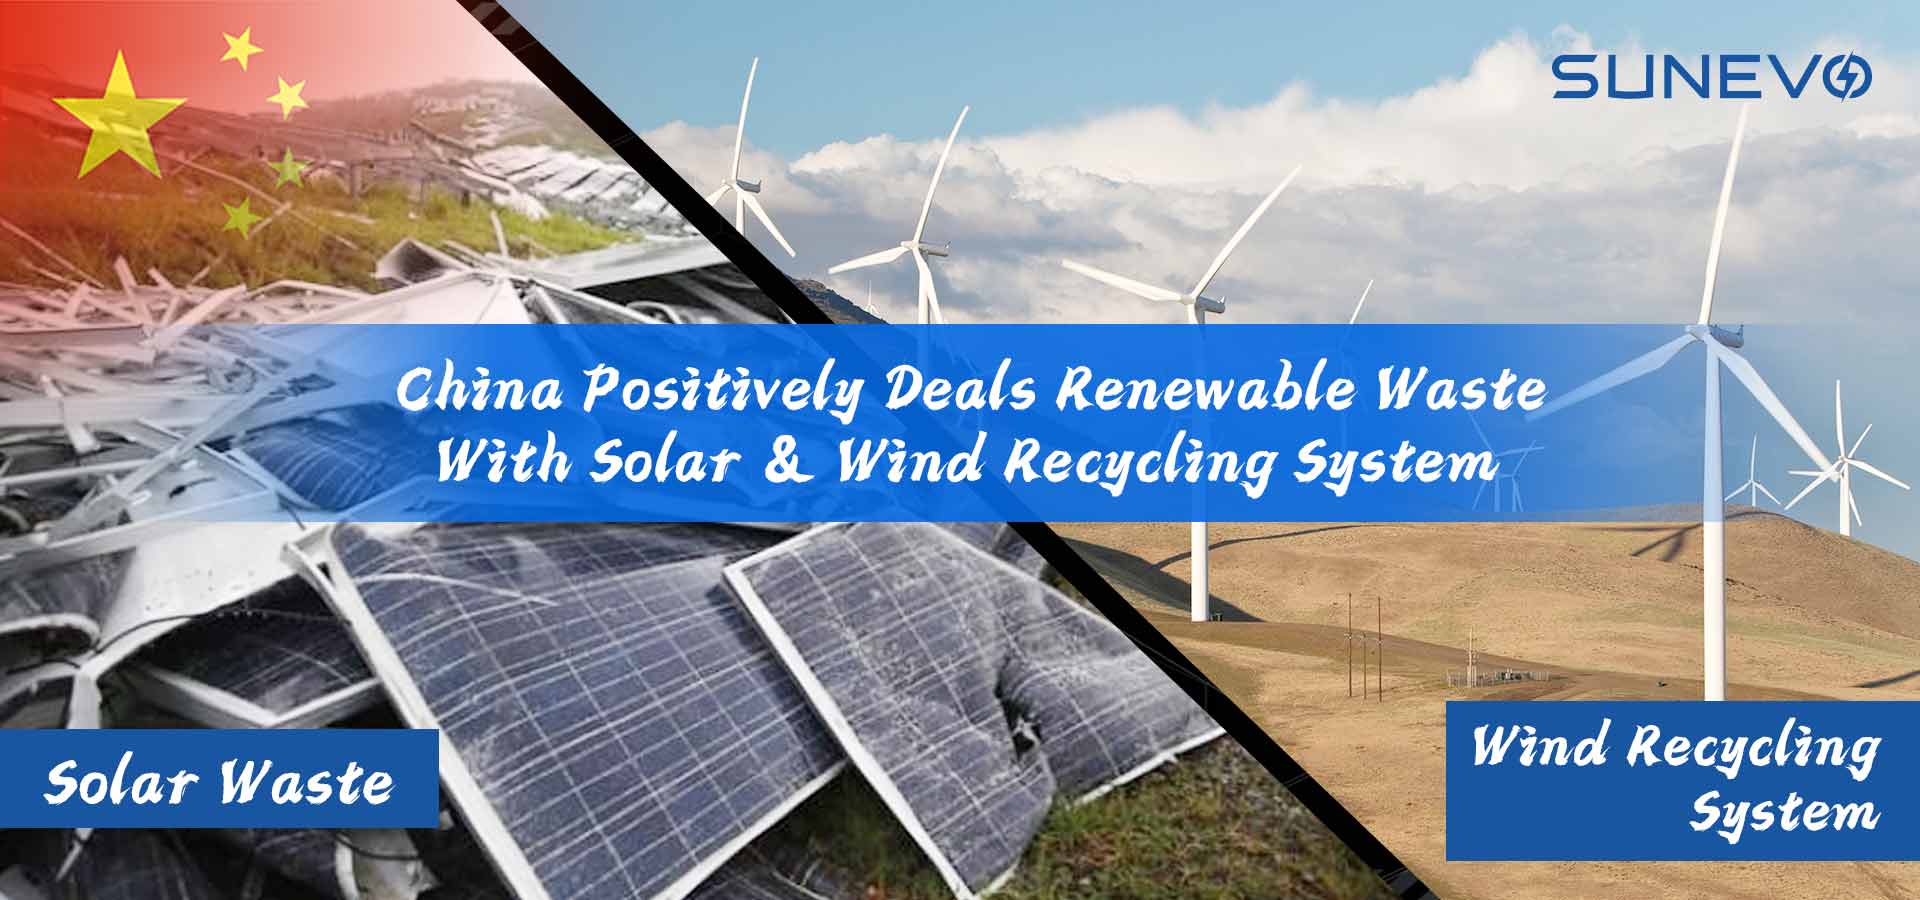 La Cina tratta rifiuti rinnovabili con sistemi di riciclaggio solare ed eolico